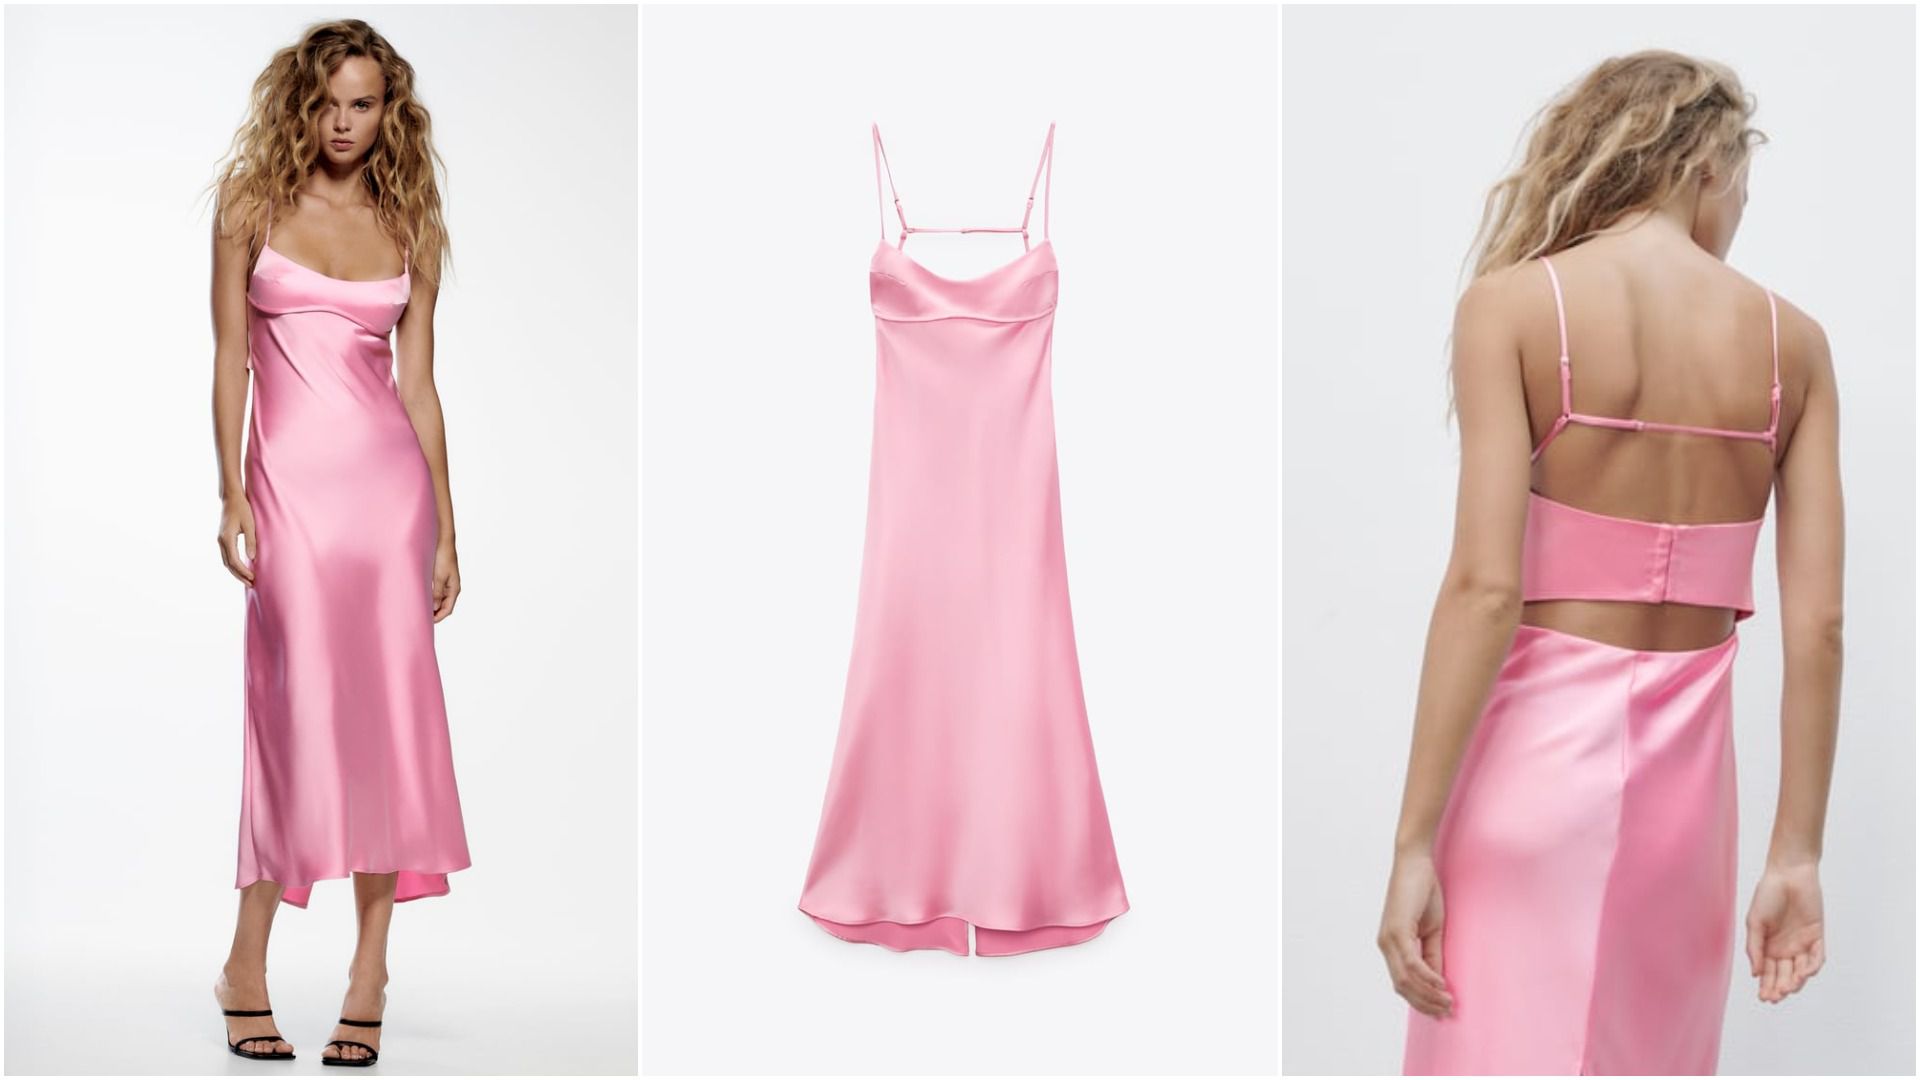 Haljina iz Zare čija popularnost raste iz dana u dan: Hit je na TikToku gdje kažu da je "najsavršenija ružičasta haljina"